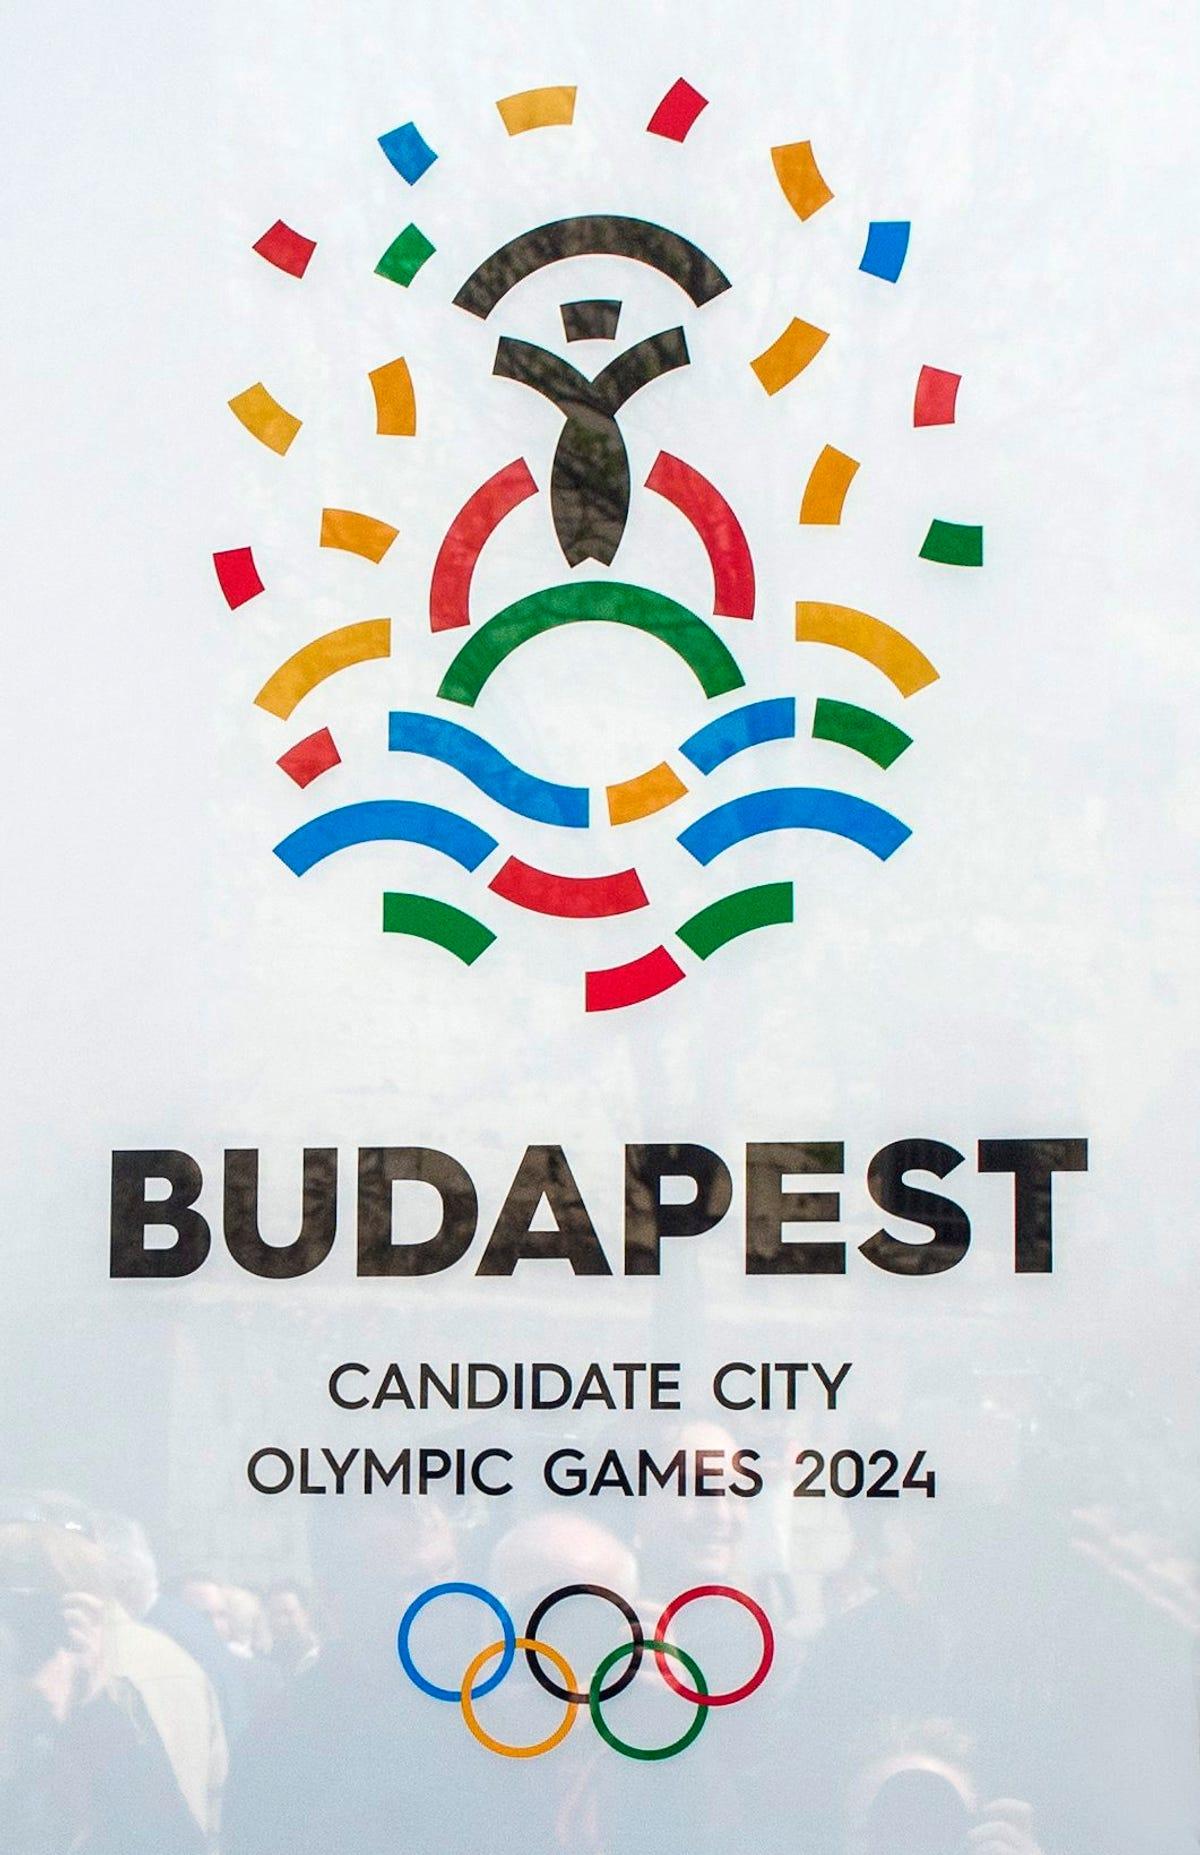 Budapest Logo - Budapest presents logo for 2024 Olympic bid